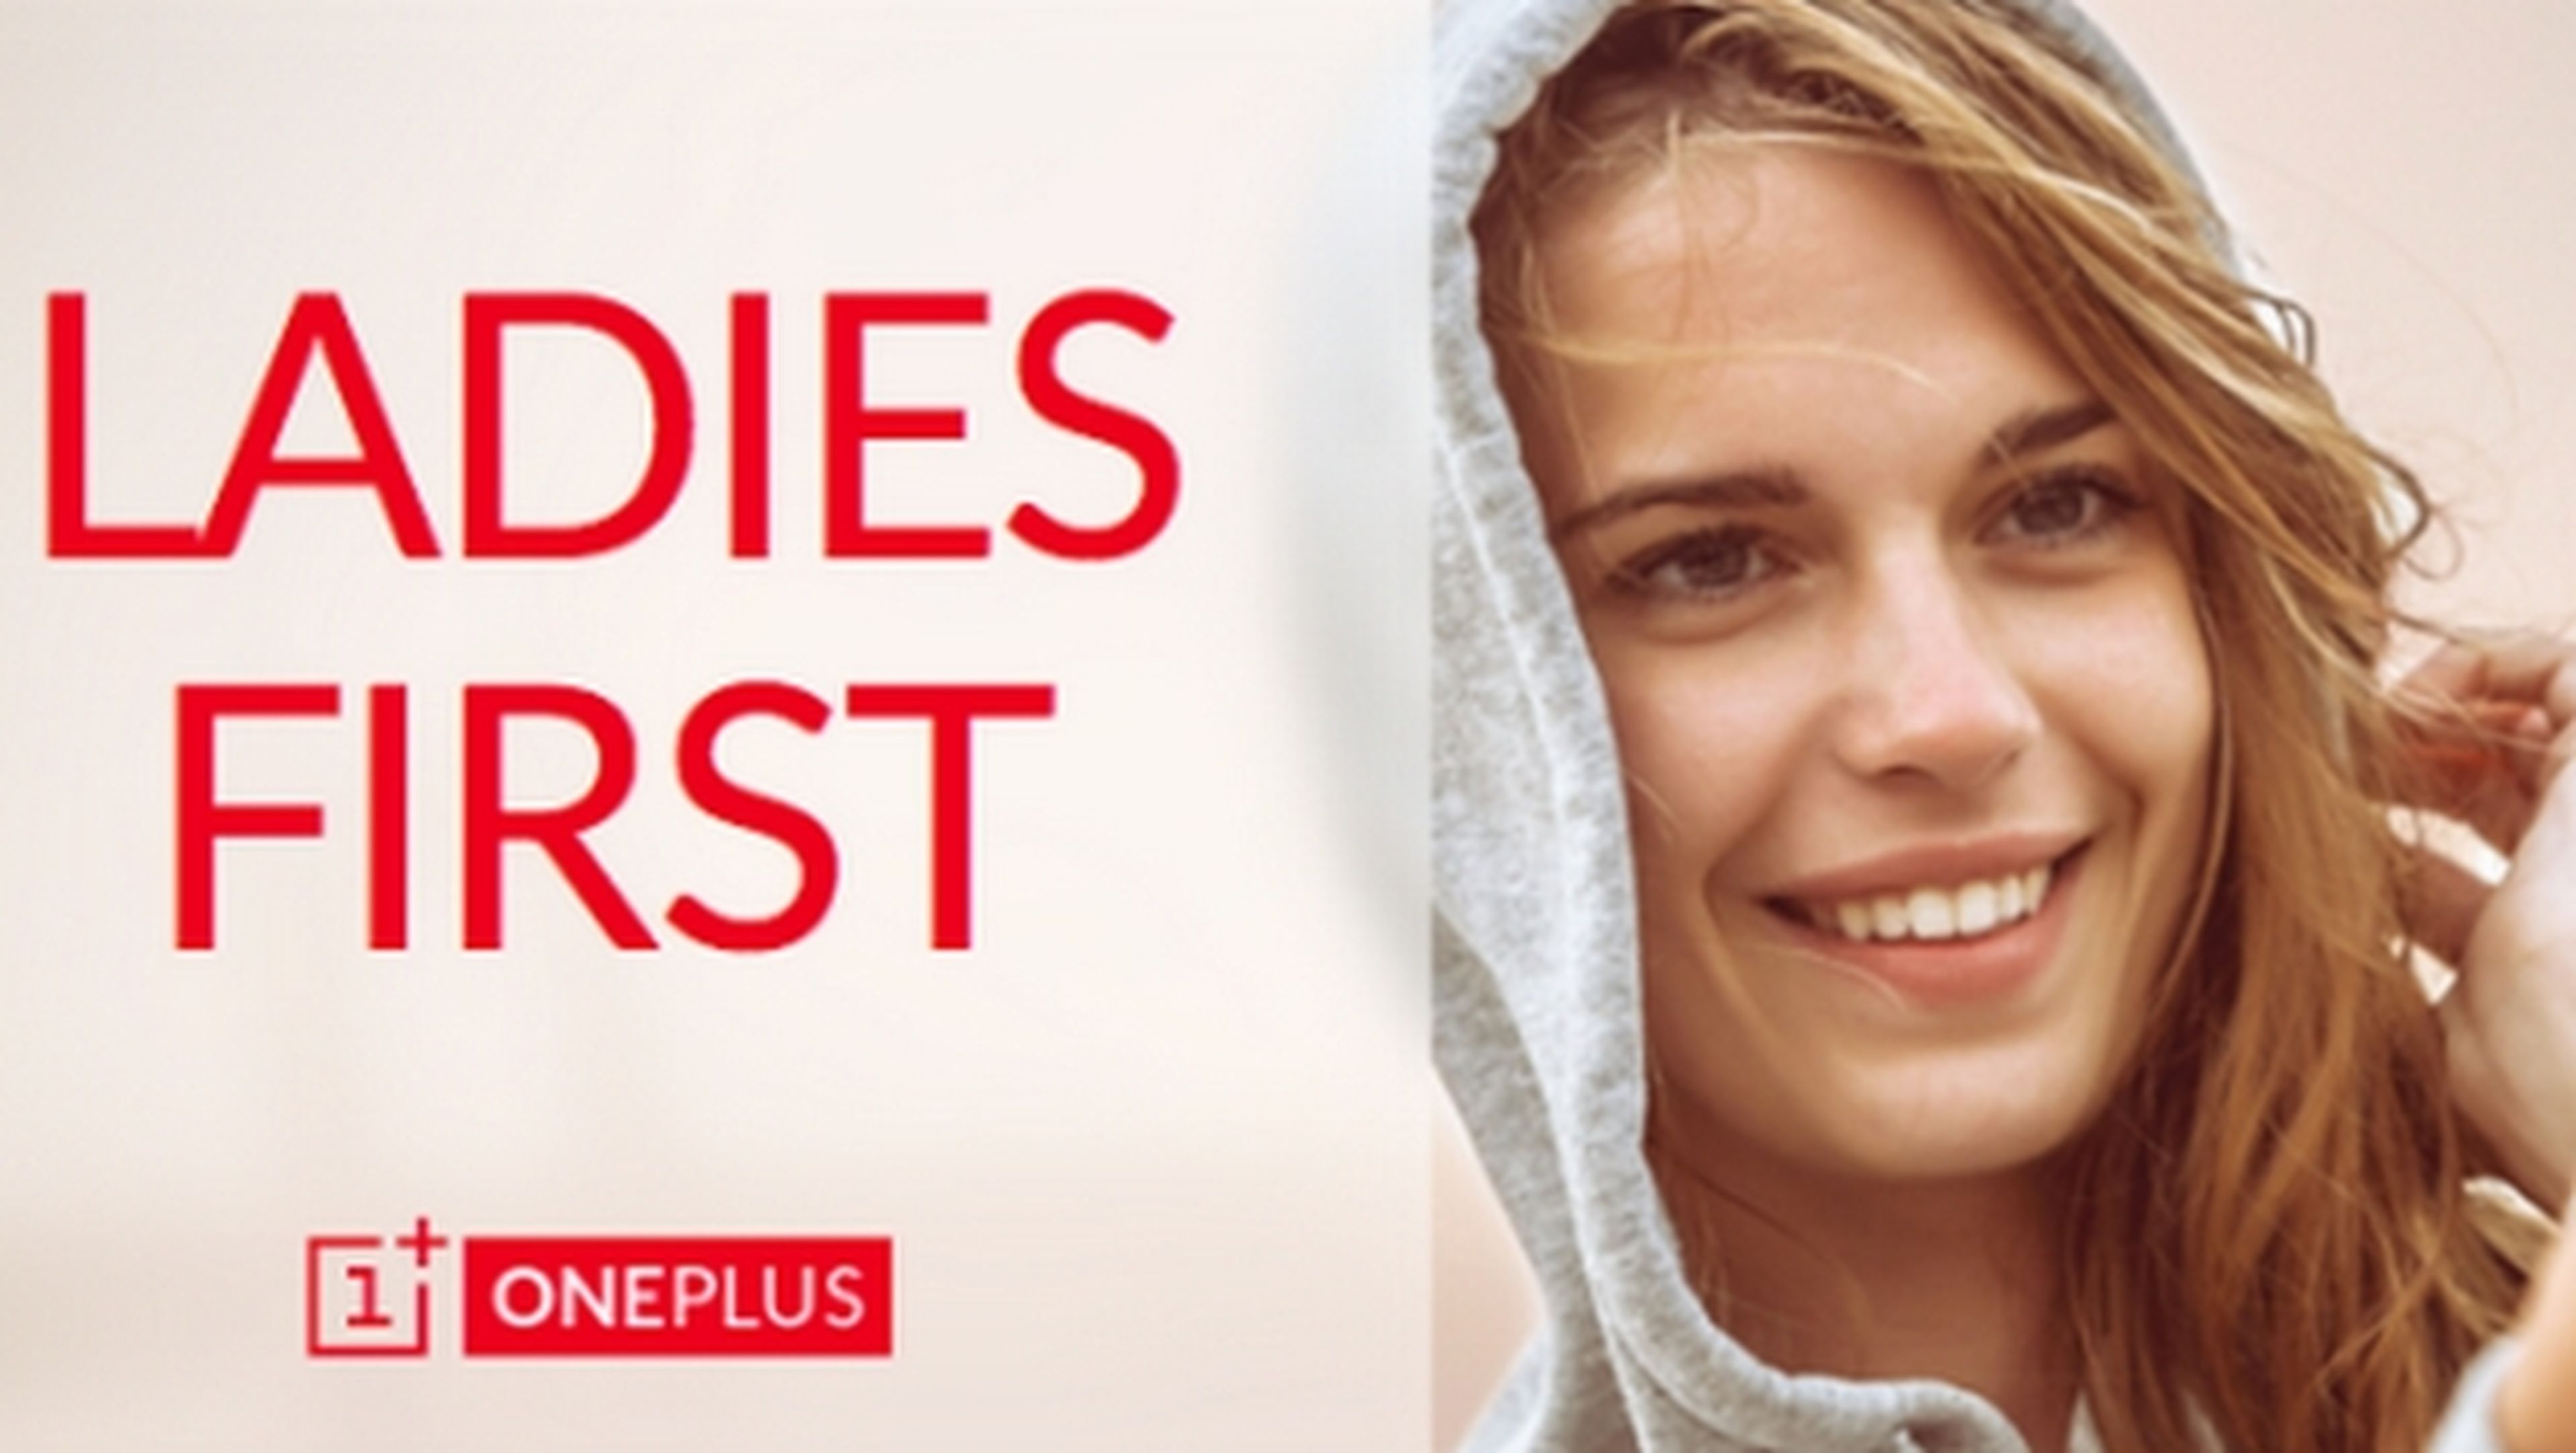 OnePlus One cierra su concurso para mujeres Lady First, calificado de machista, y pide perdón.